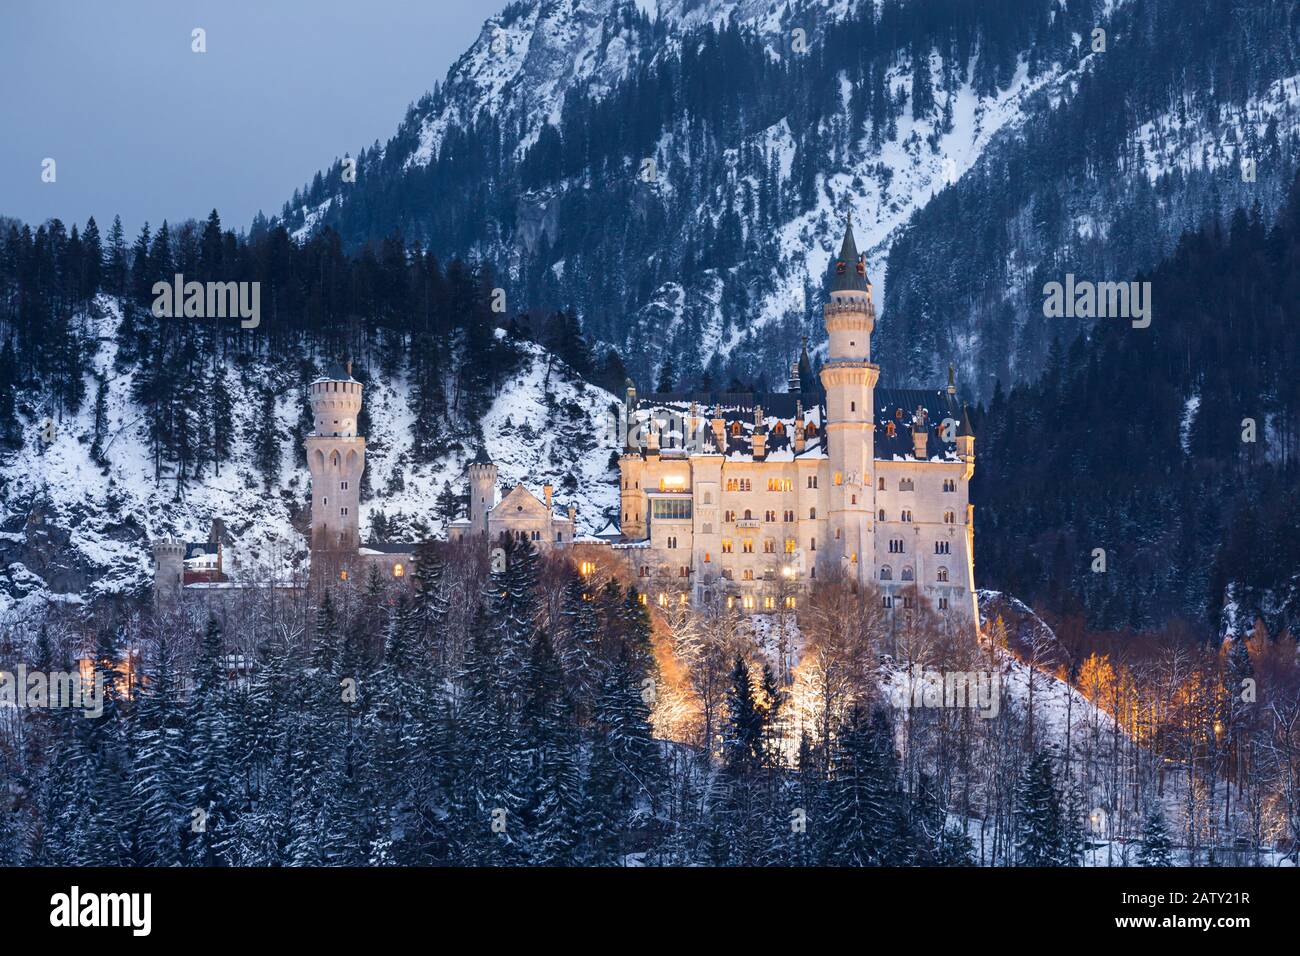 Winteruntergang auf Schloss Neuschwanstein bei Hohenschwangau, Bayern, Deutschland. Stockfoto